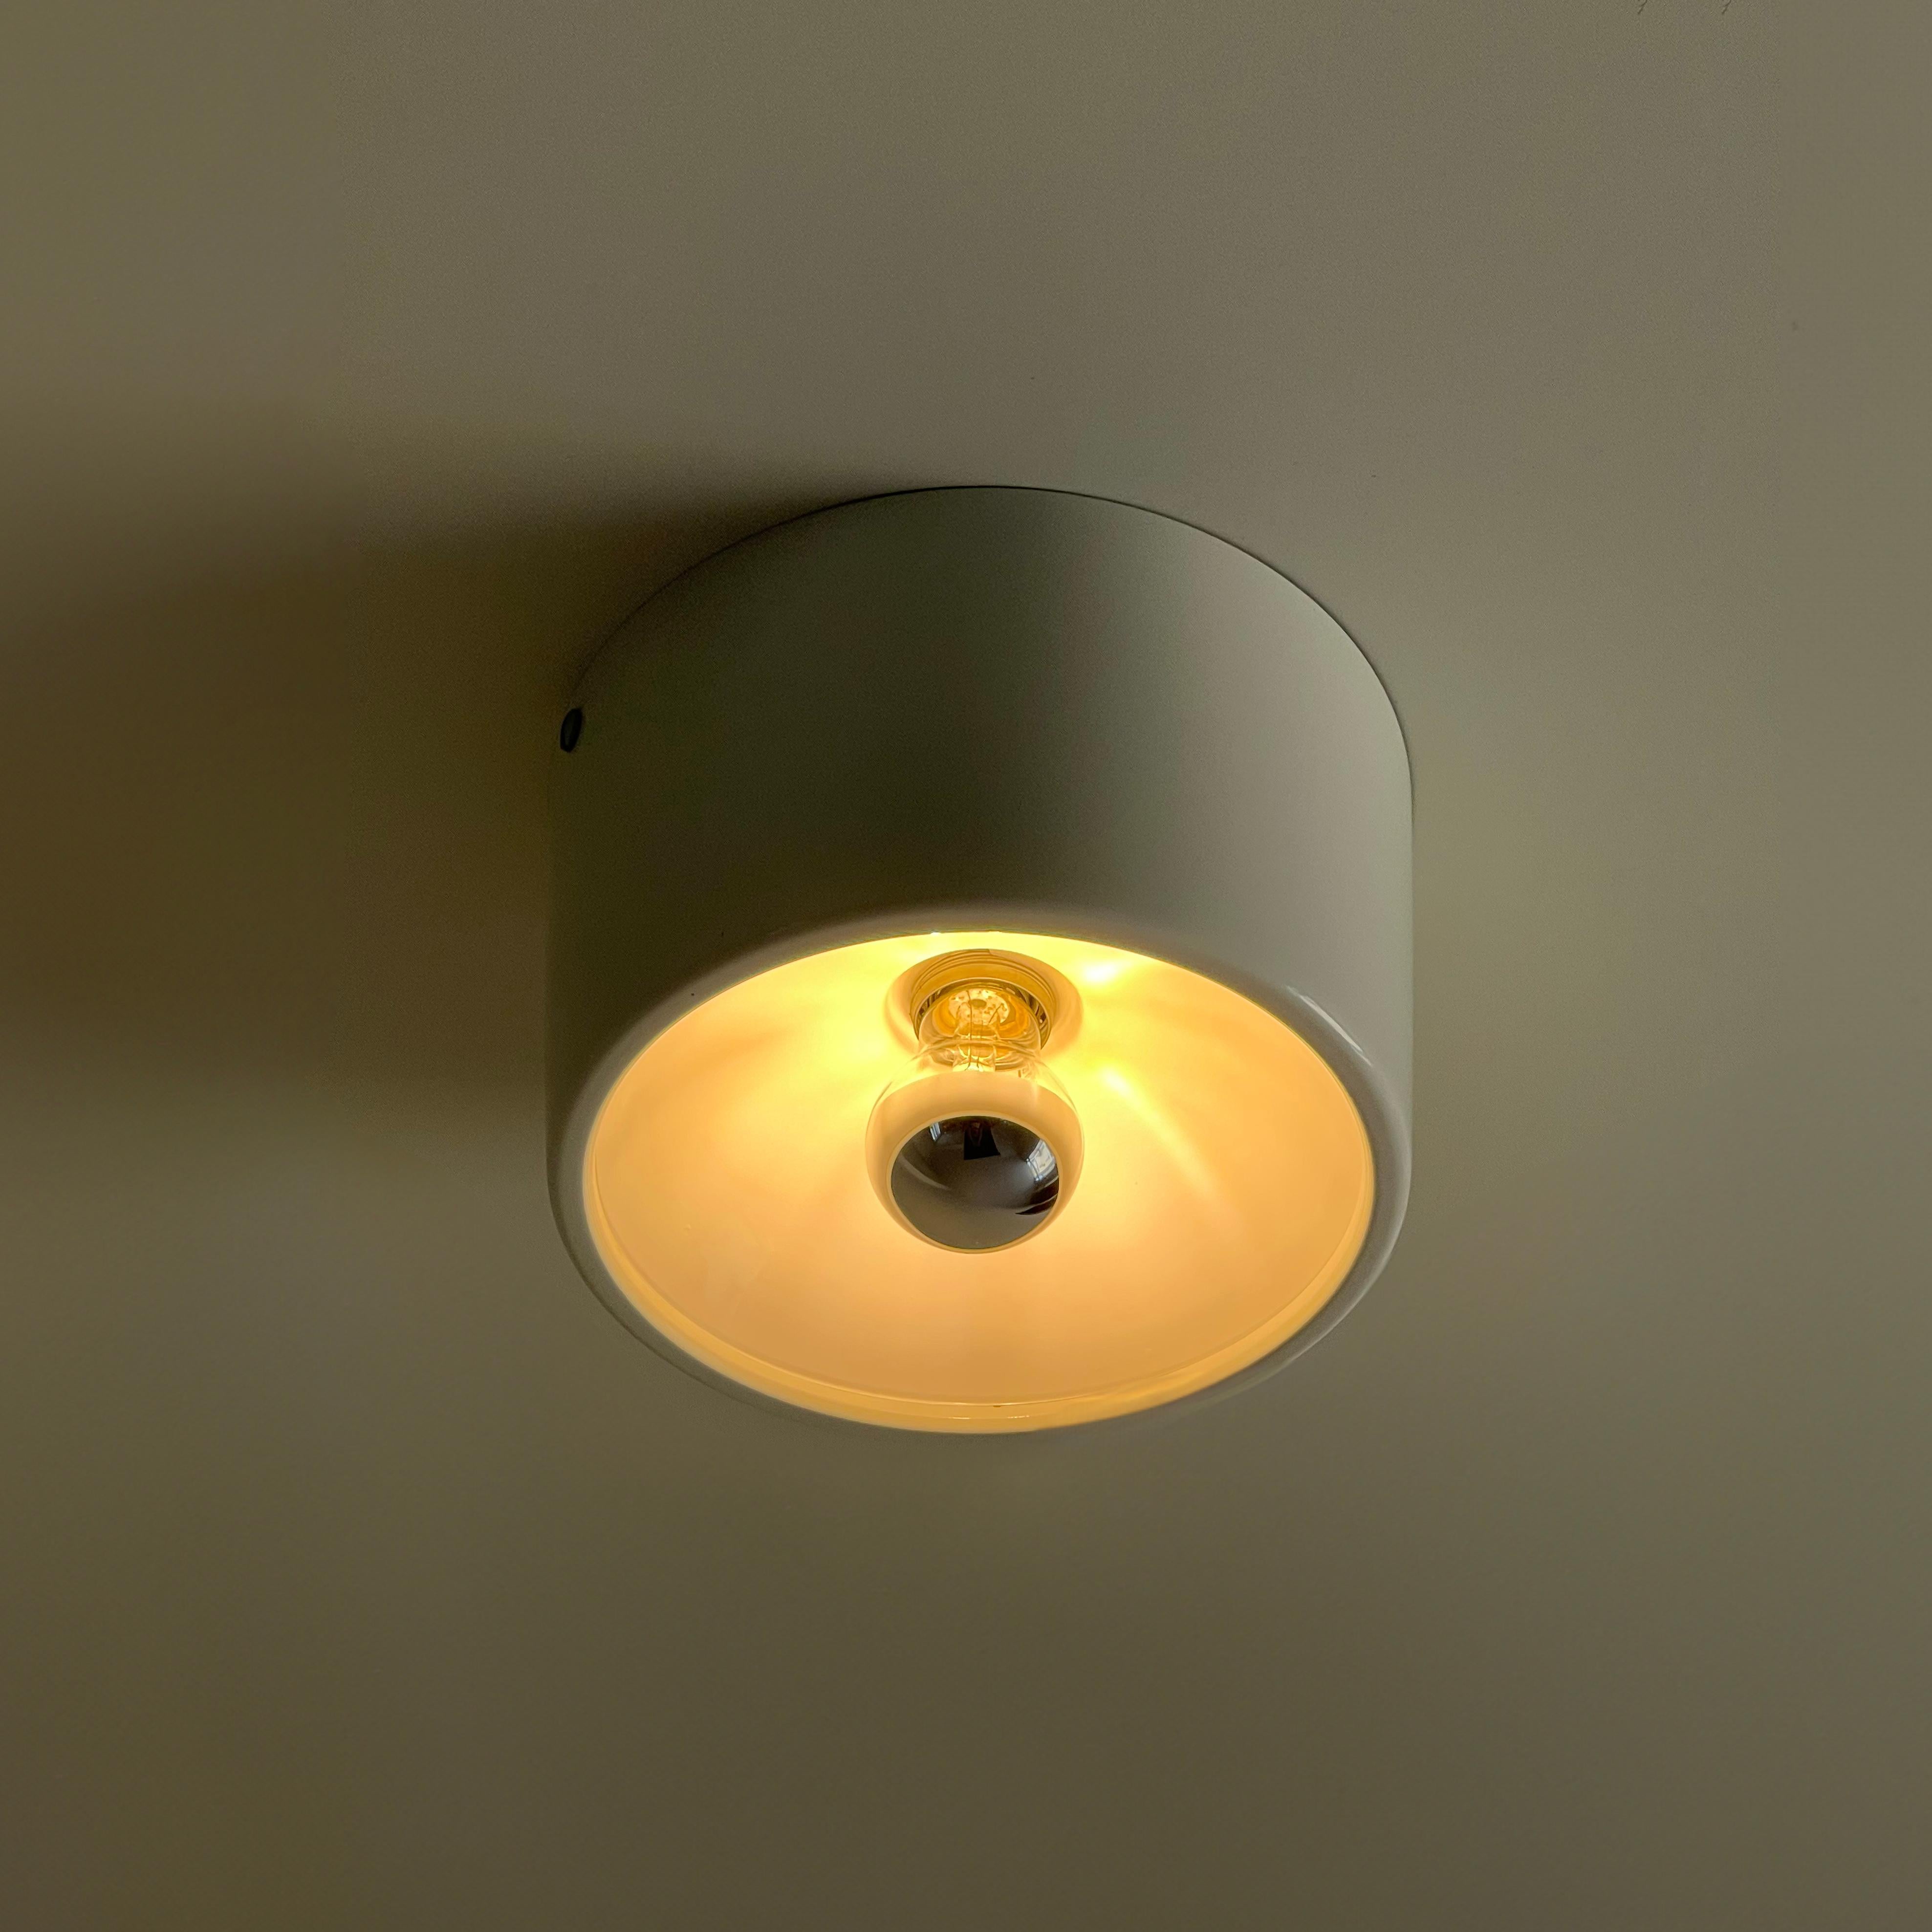 La lampe Model/One, conçue par CINI pour Arteluce, est l'exemple même du design hyper-minimaliste. Sa forme cylindrique respire l'élégance et la simplicité, sans aucun détail superflu.